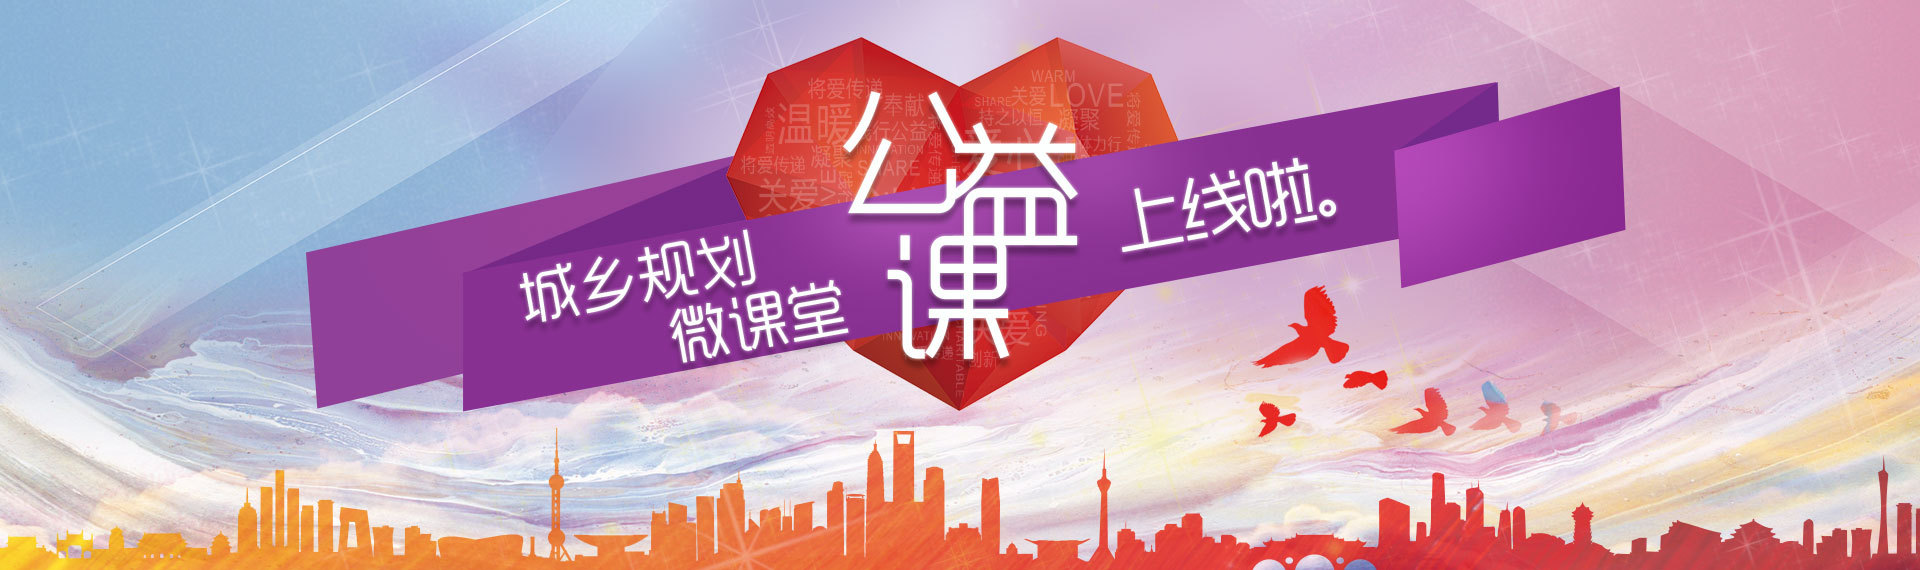 中国城市规划协会旗下在线教育平台——城乡规划微课堂上线了